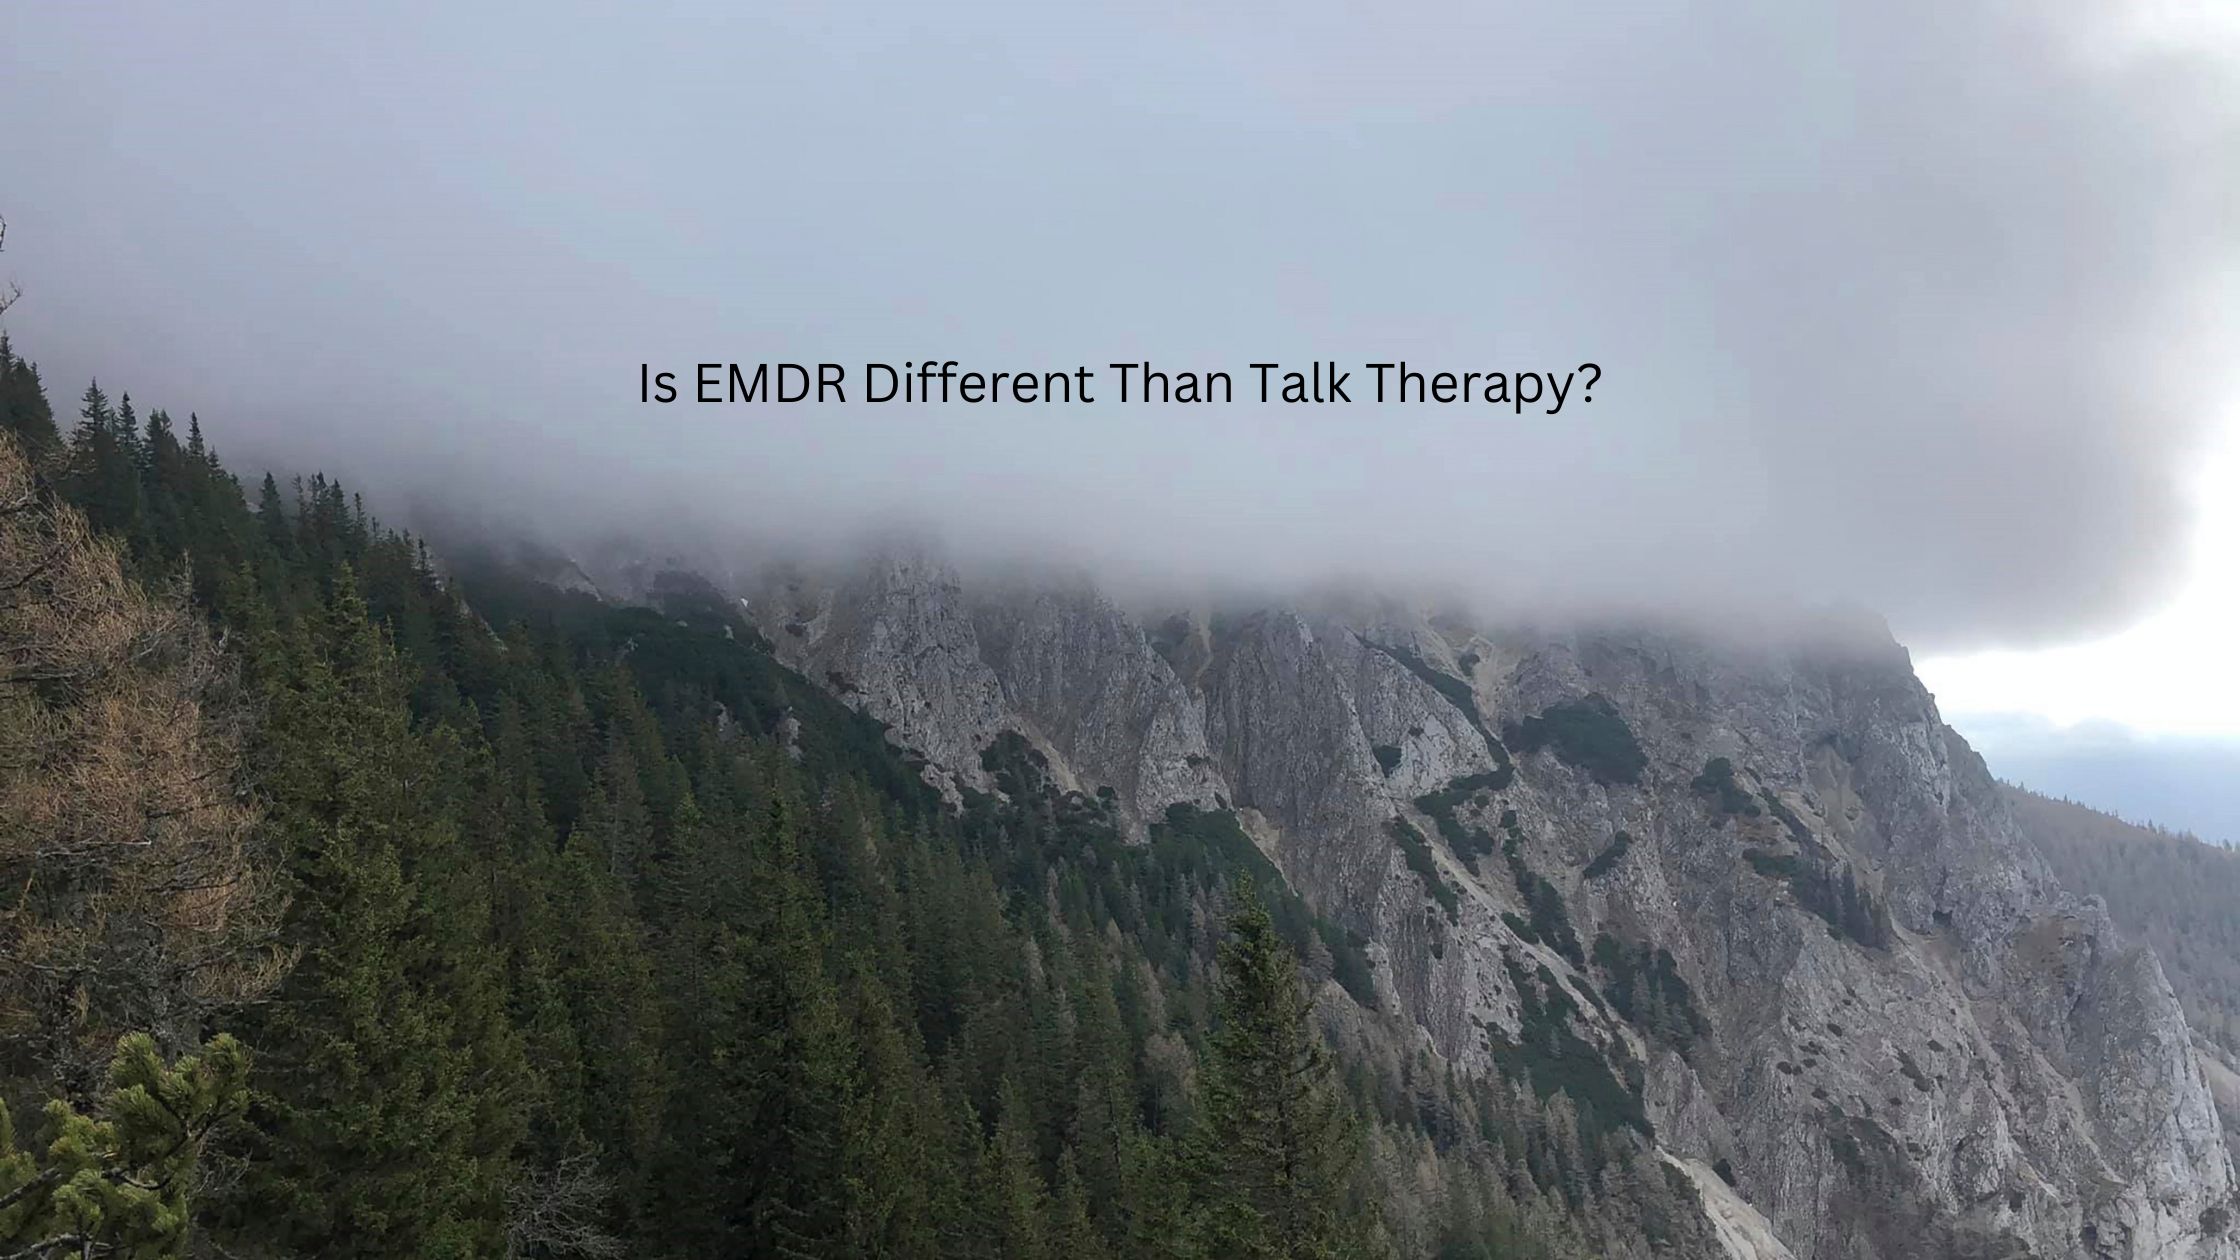 EMDR, EMDR therapy